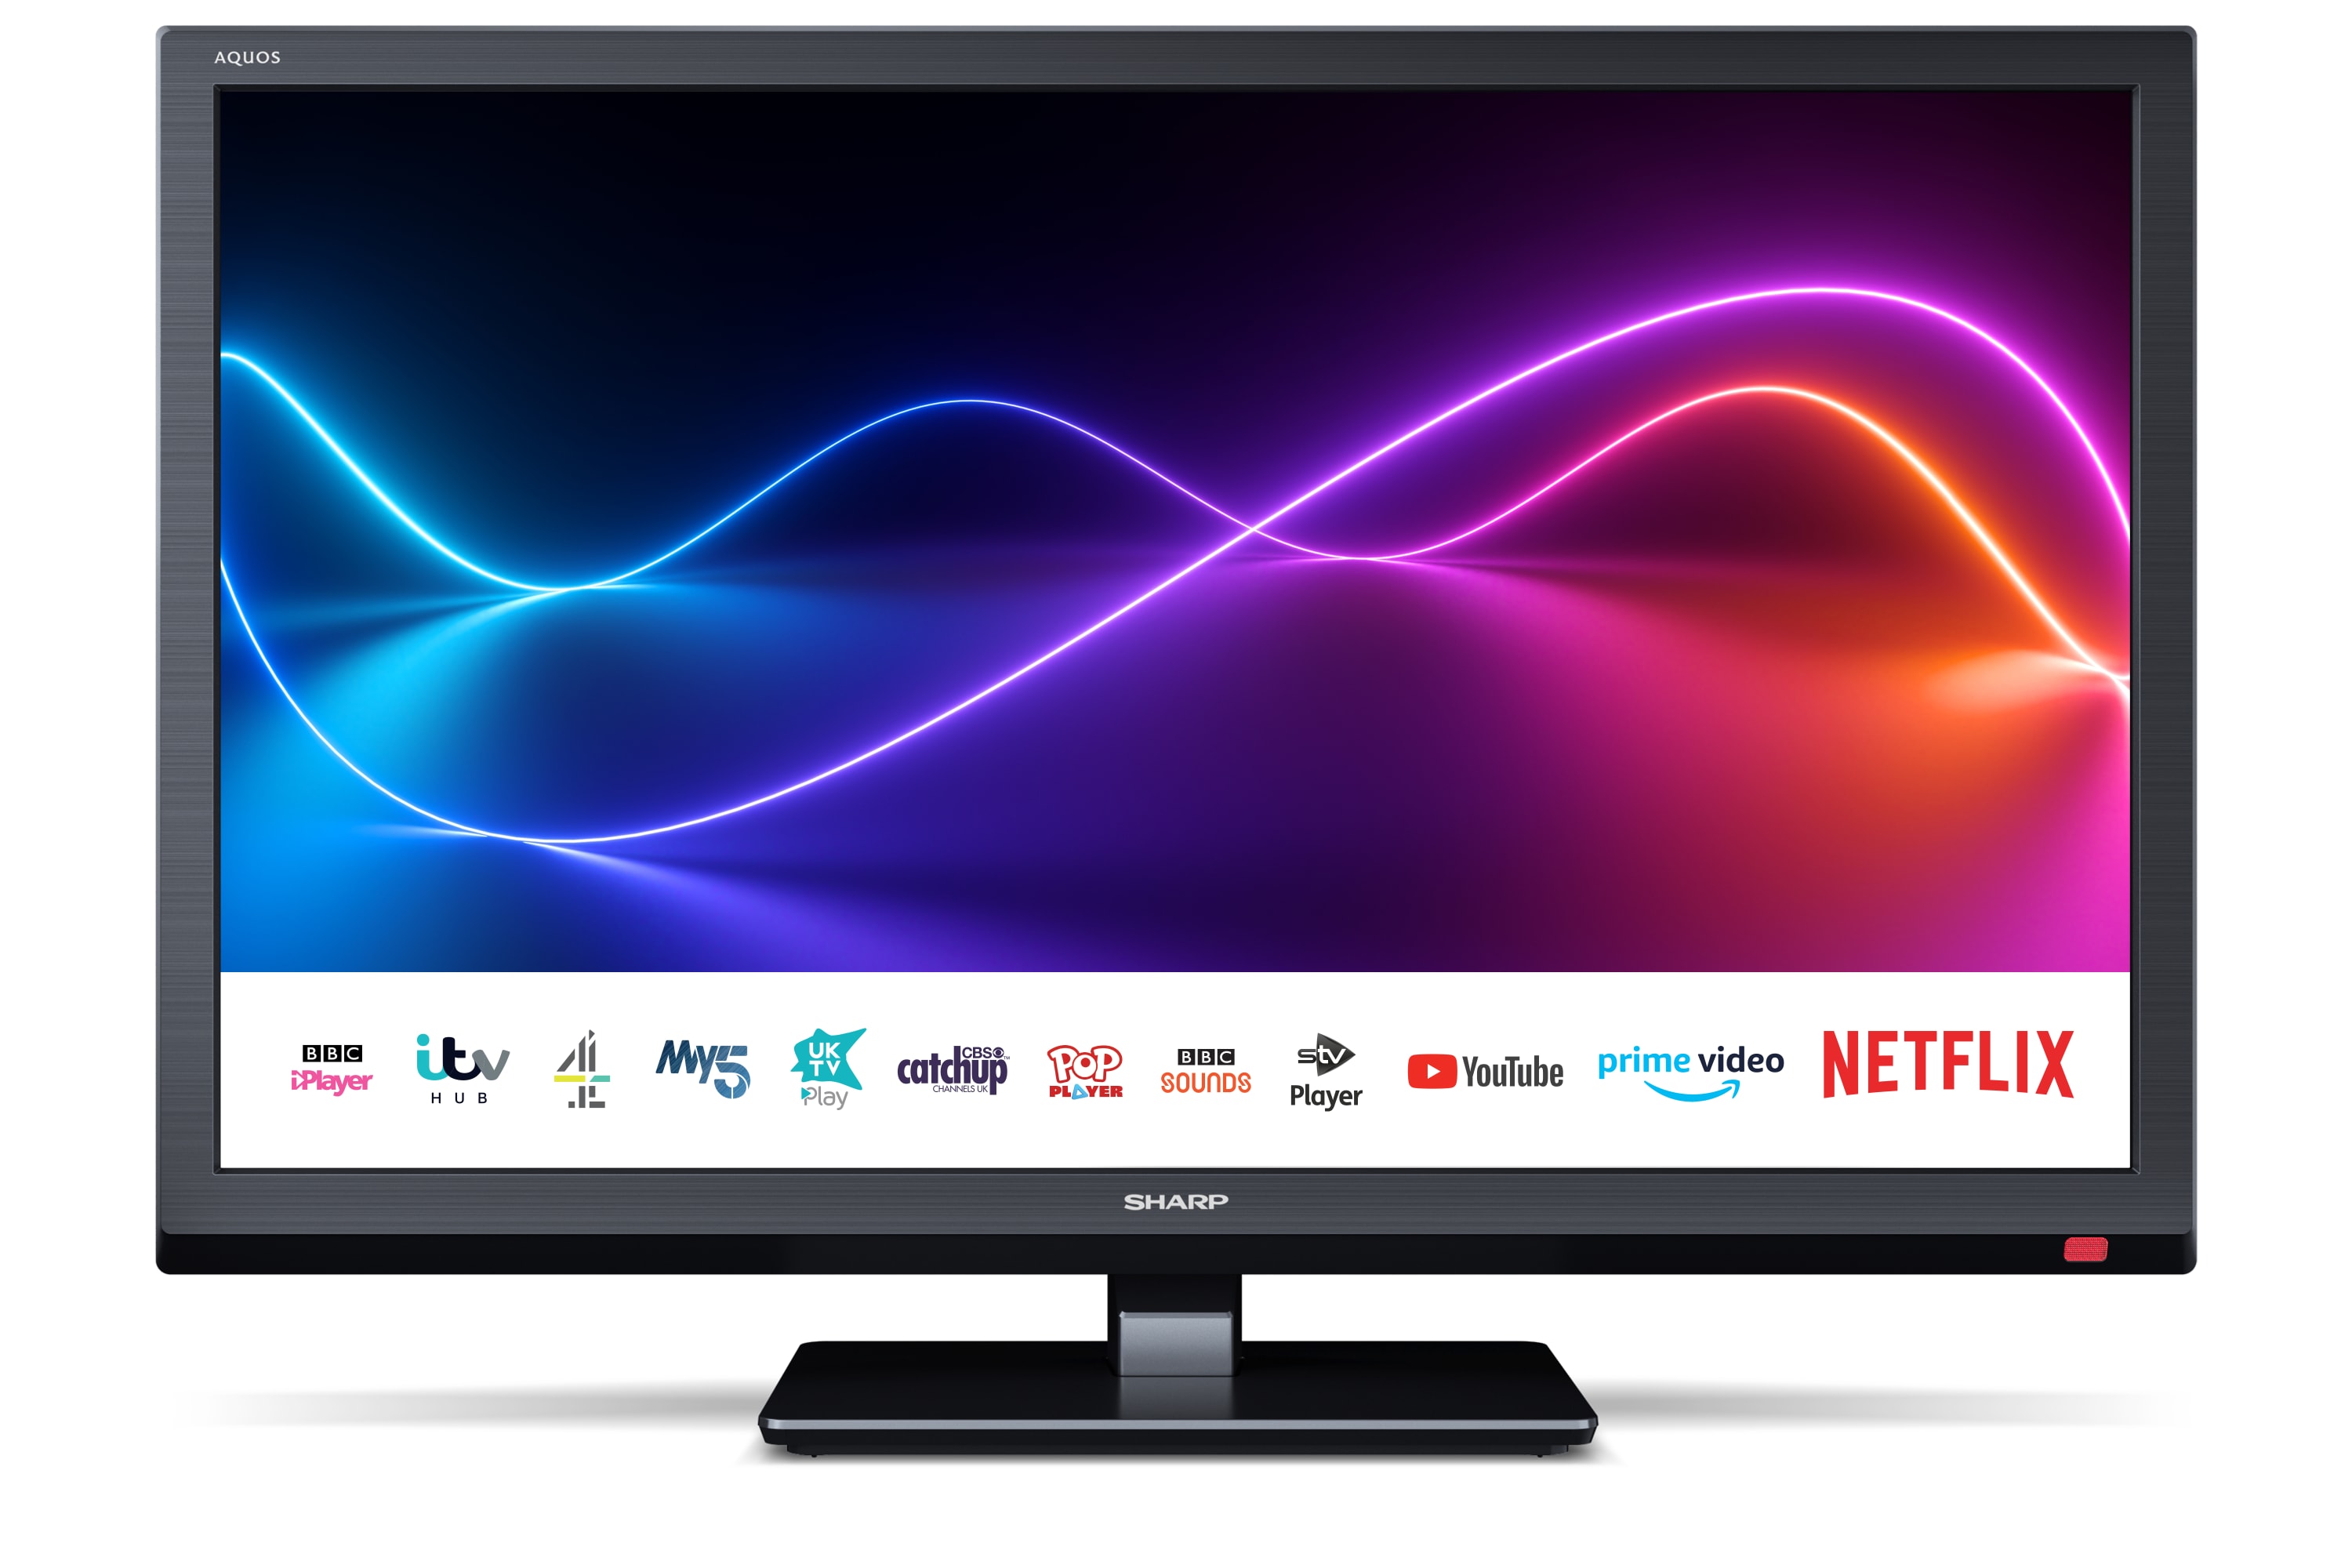 Smart TV HD/Full HD - 24" HD READY SMART TV